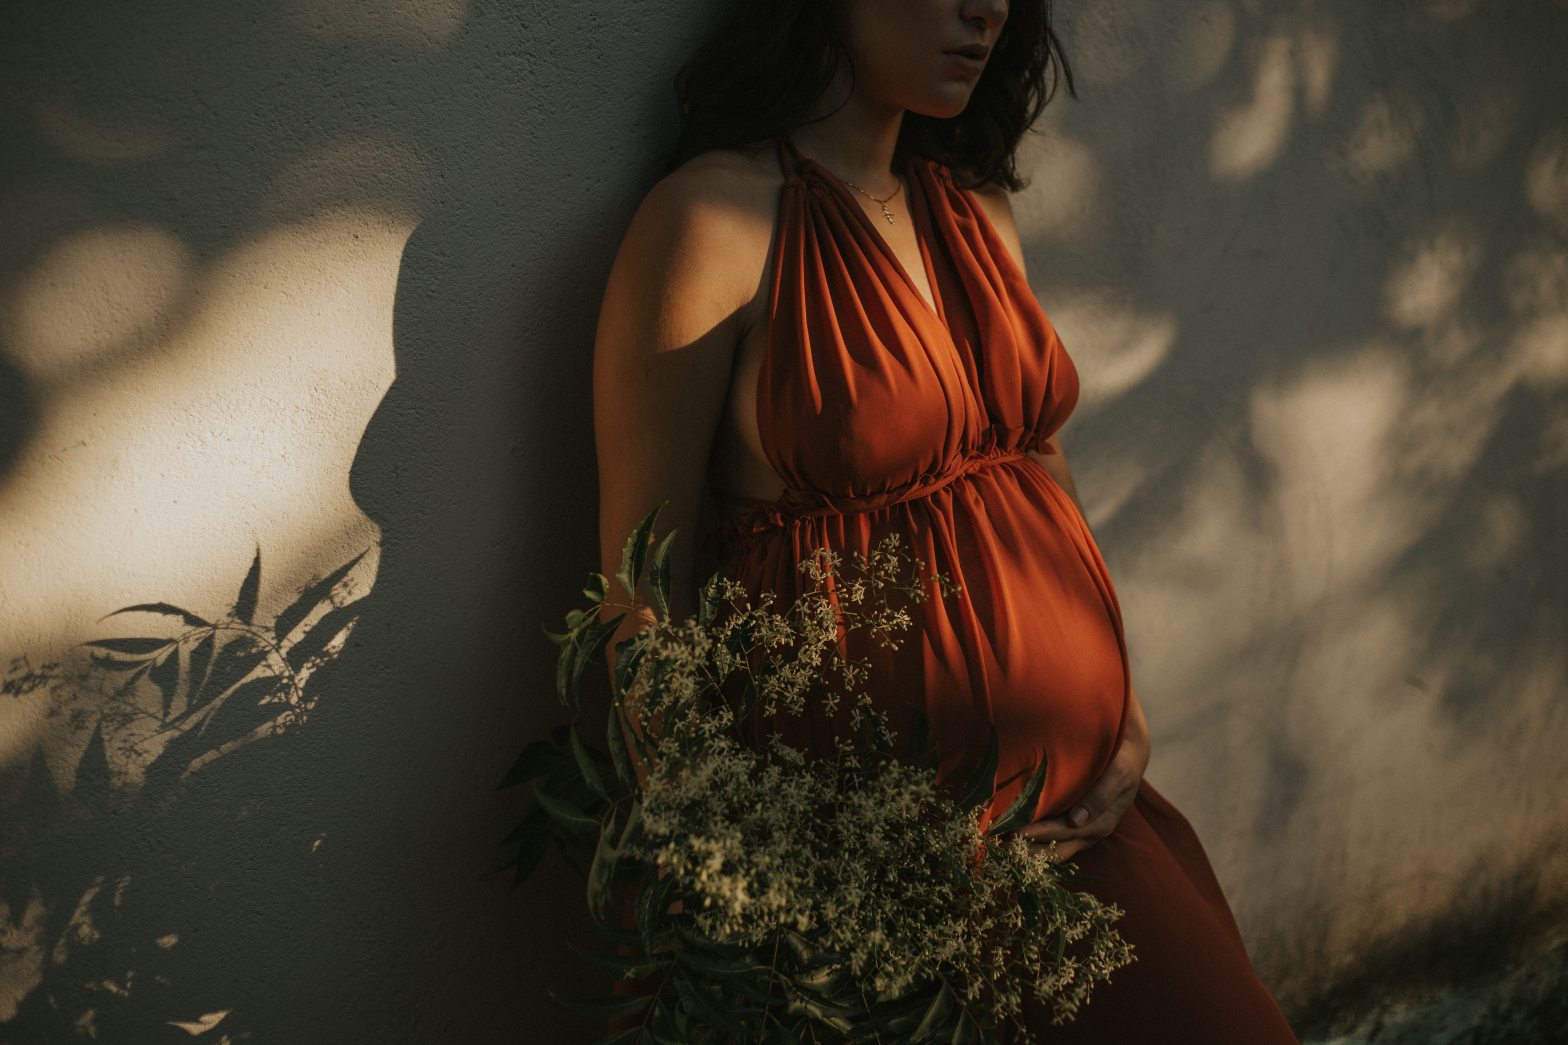 Over fertiliteit en voeding, de weg naar een gezonde zwangerschap – Radio O’yo podcast